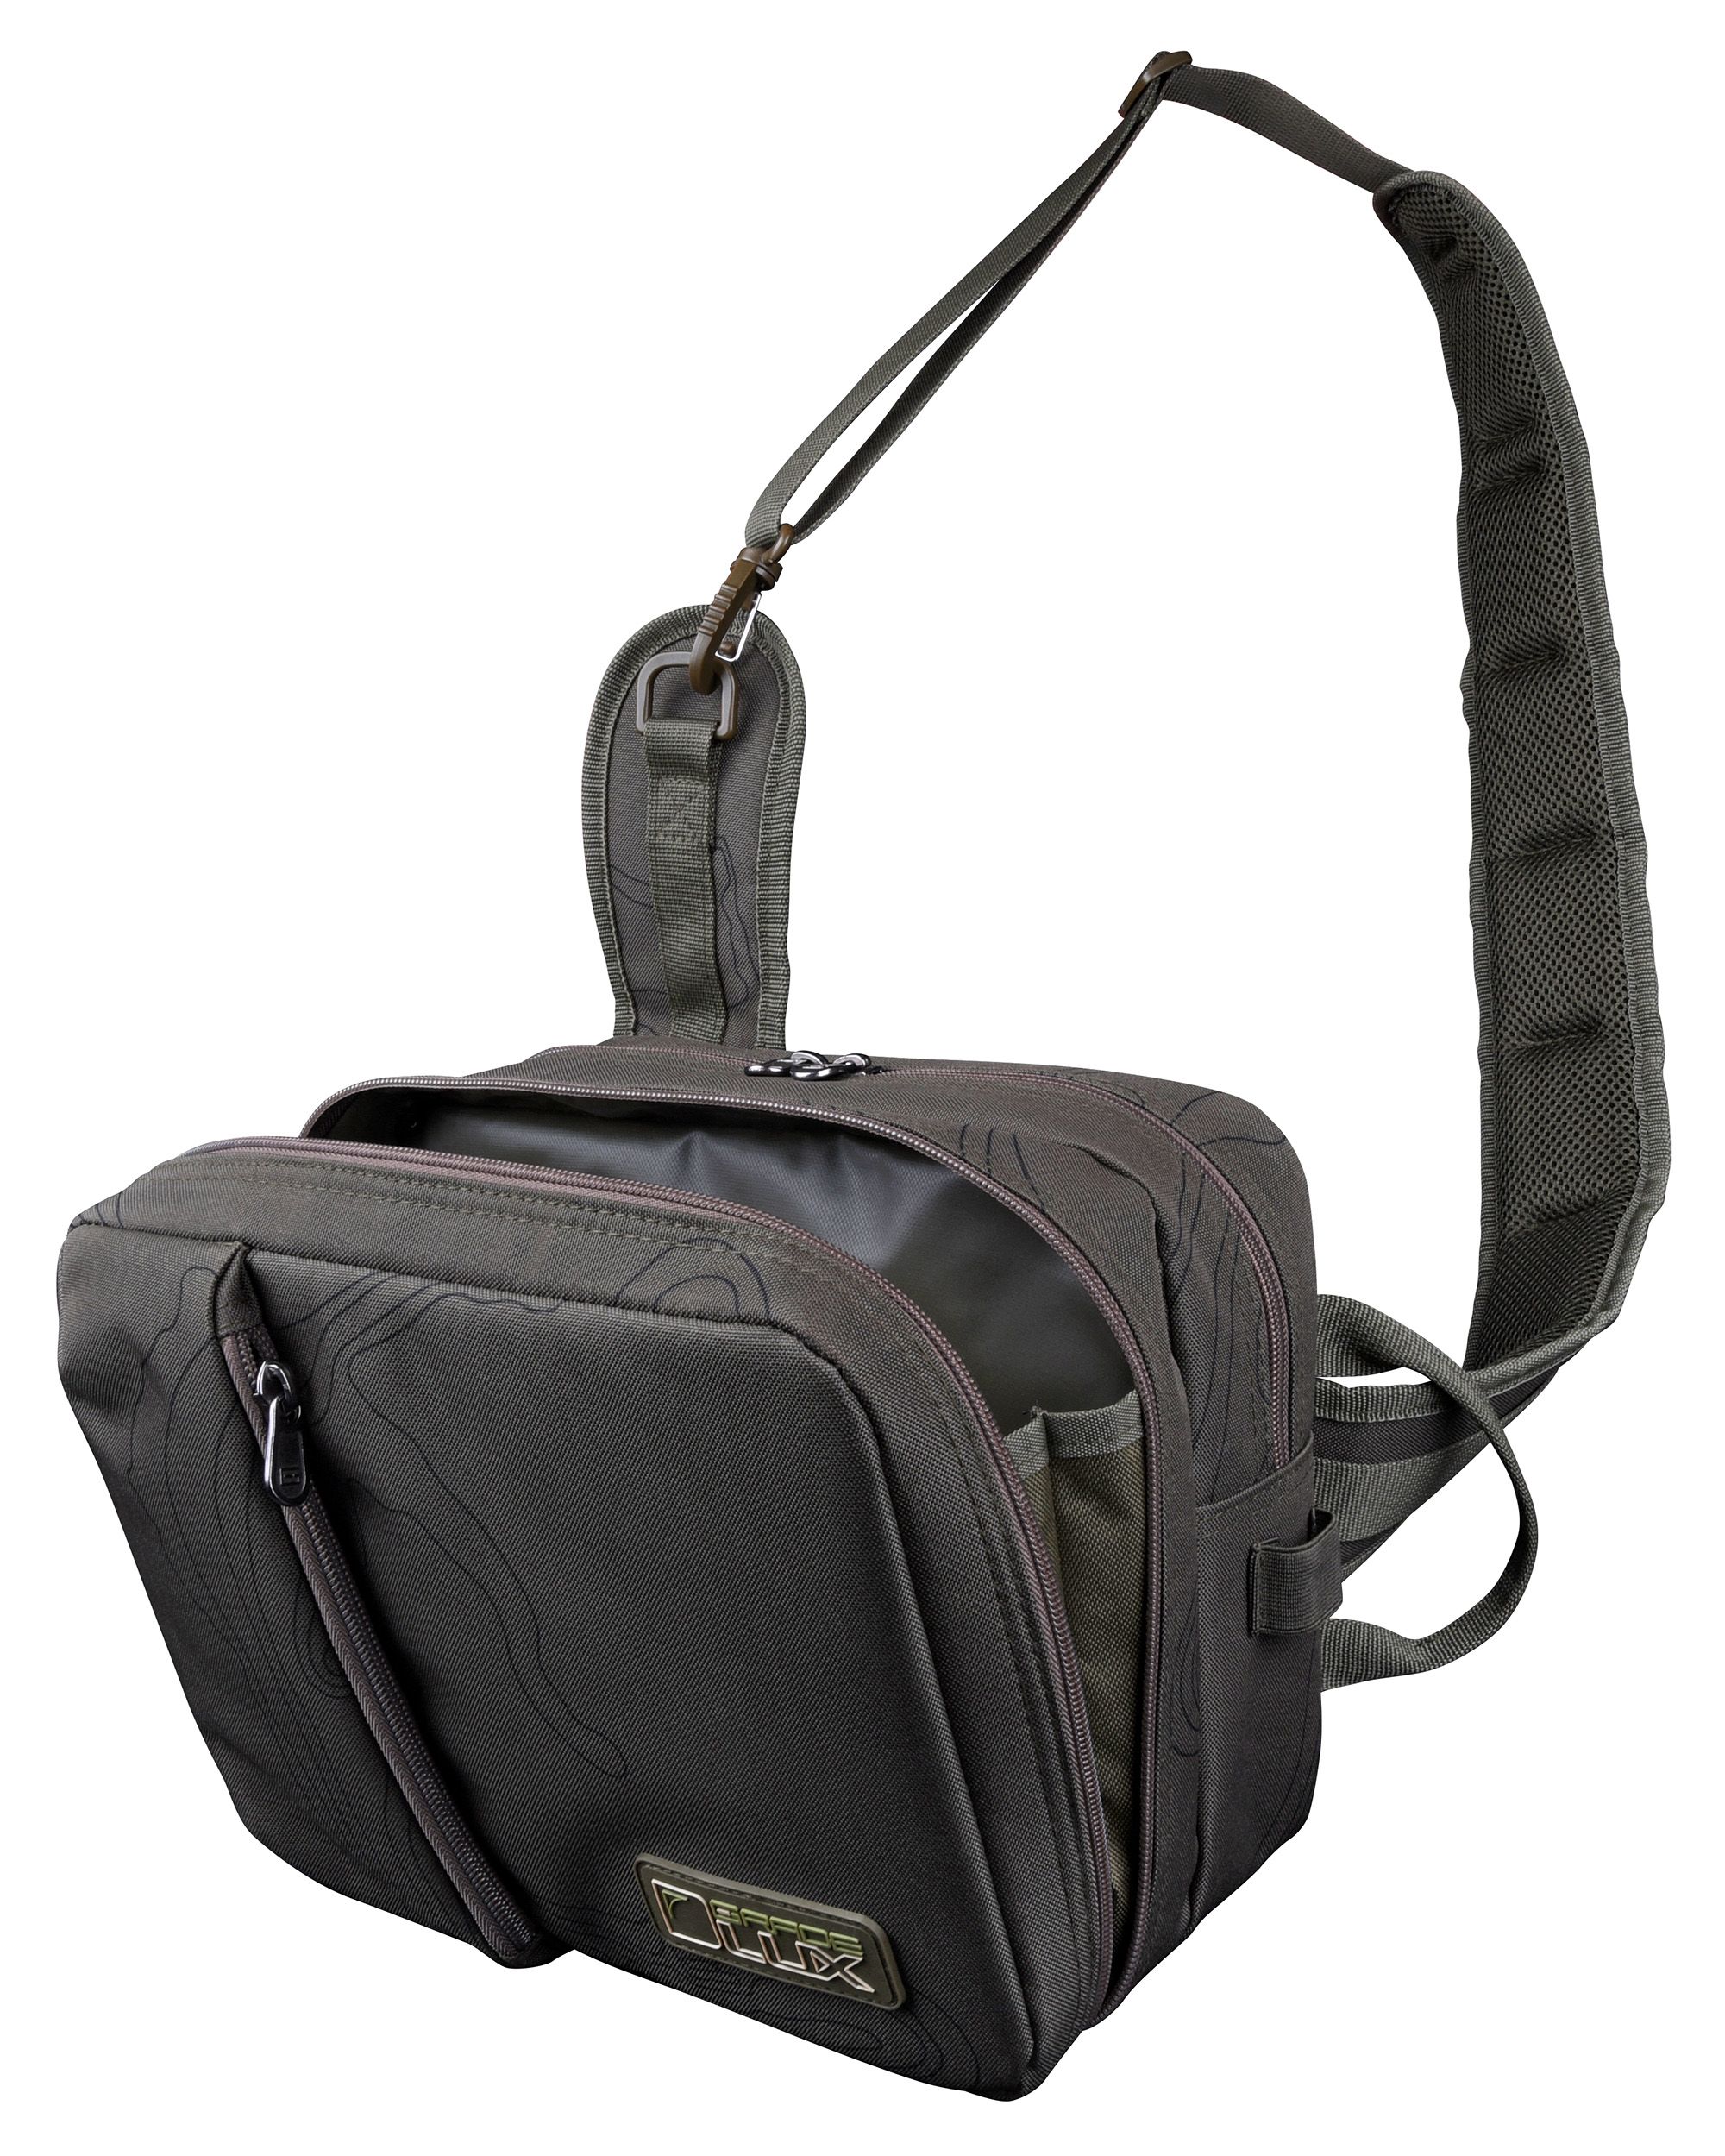 Grade D-Lux Stalker Bag Rucksack